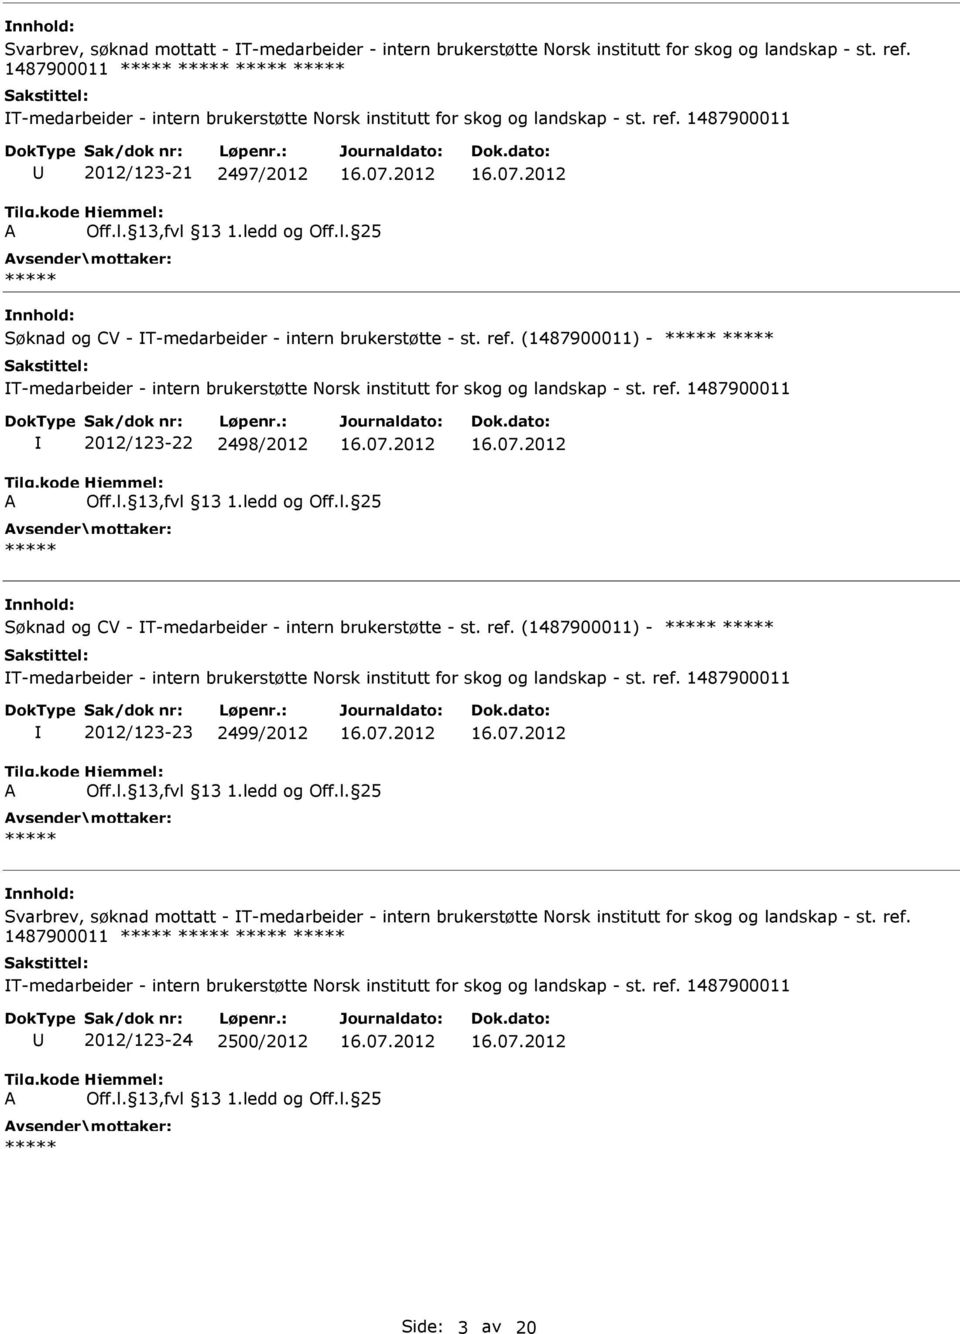 ref. (1487900011) - T-medarbeider - intern brukerstøtte Norsk institutt for skog og landskap - st. ref. 1487900011 2012/123-23 2499/2012  ref. 1487900011 2012/123-24 2500/2012 Side: 3 av 20